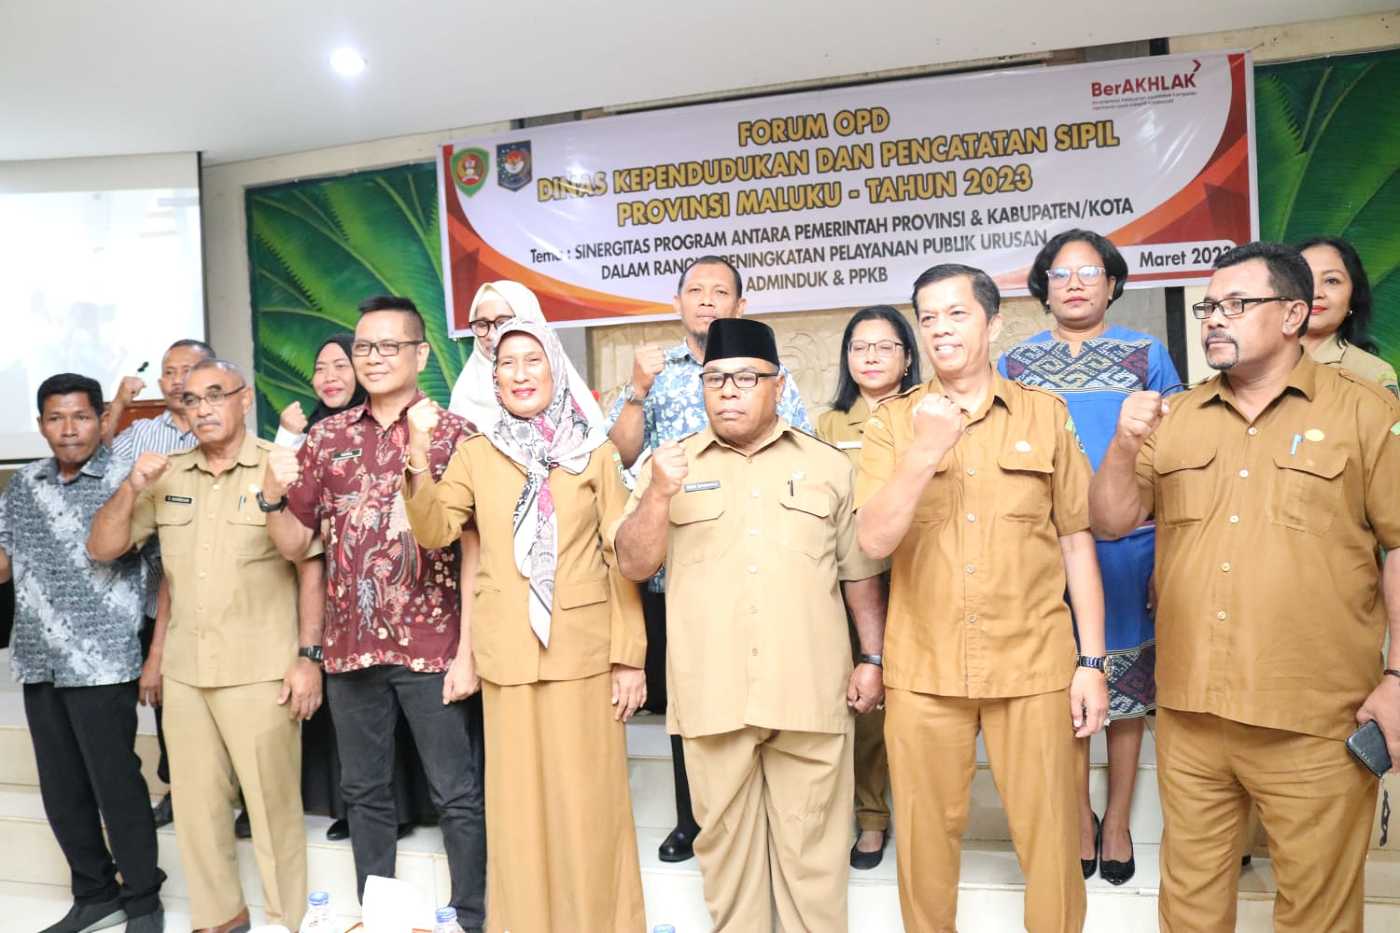 Gubernur Harap Forum OPD Dukcapil Jawab Masalah Kependudukan dan Pencatatan Sipil di Maluku